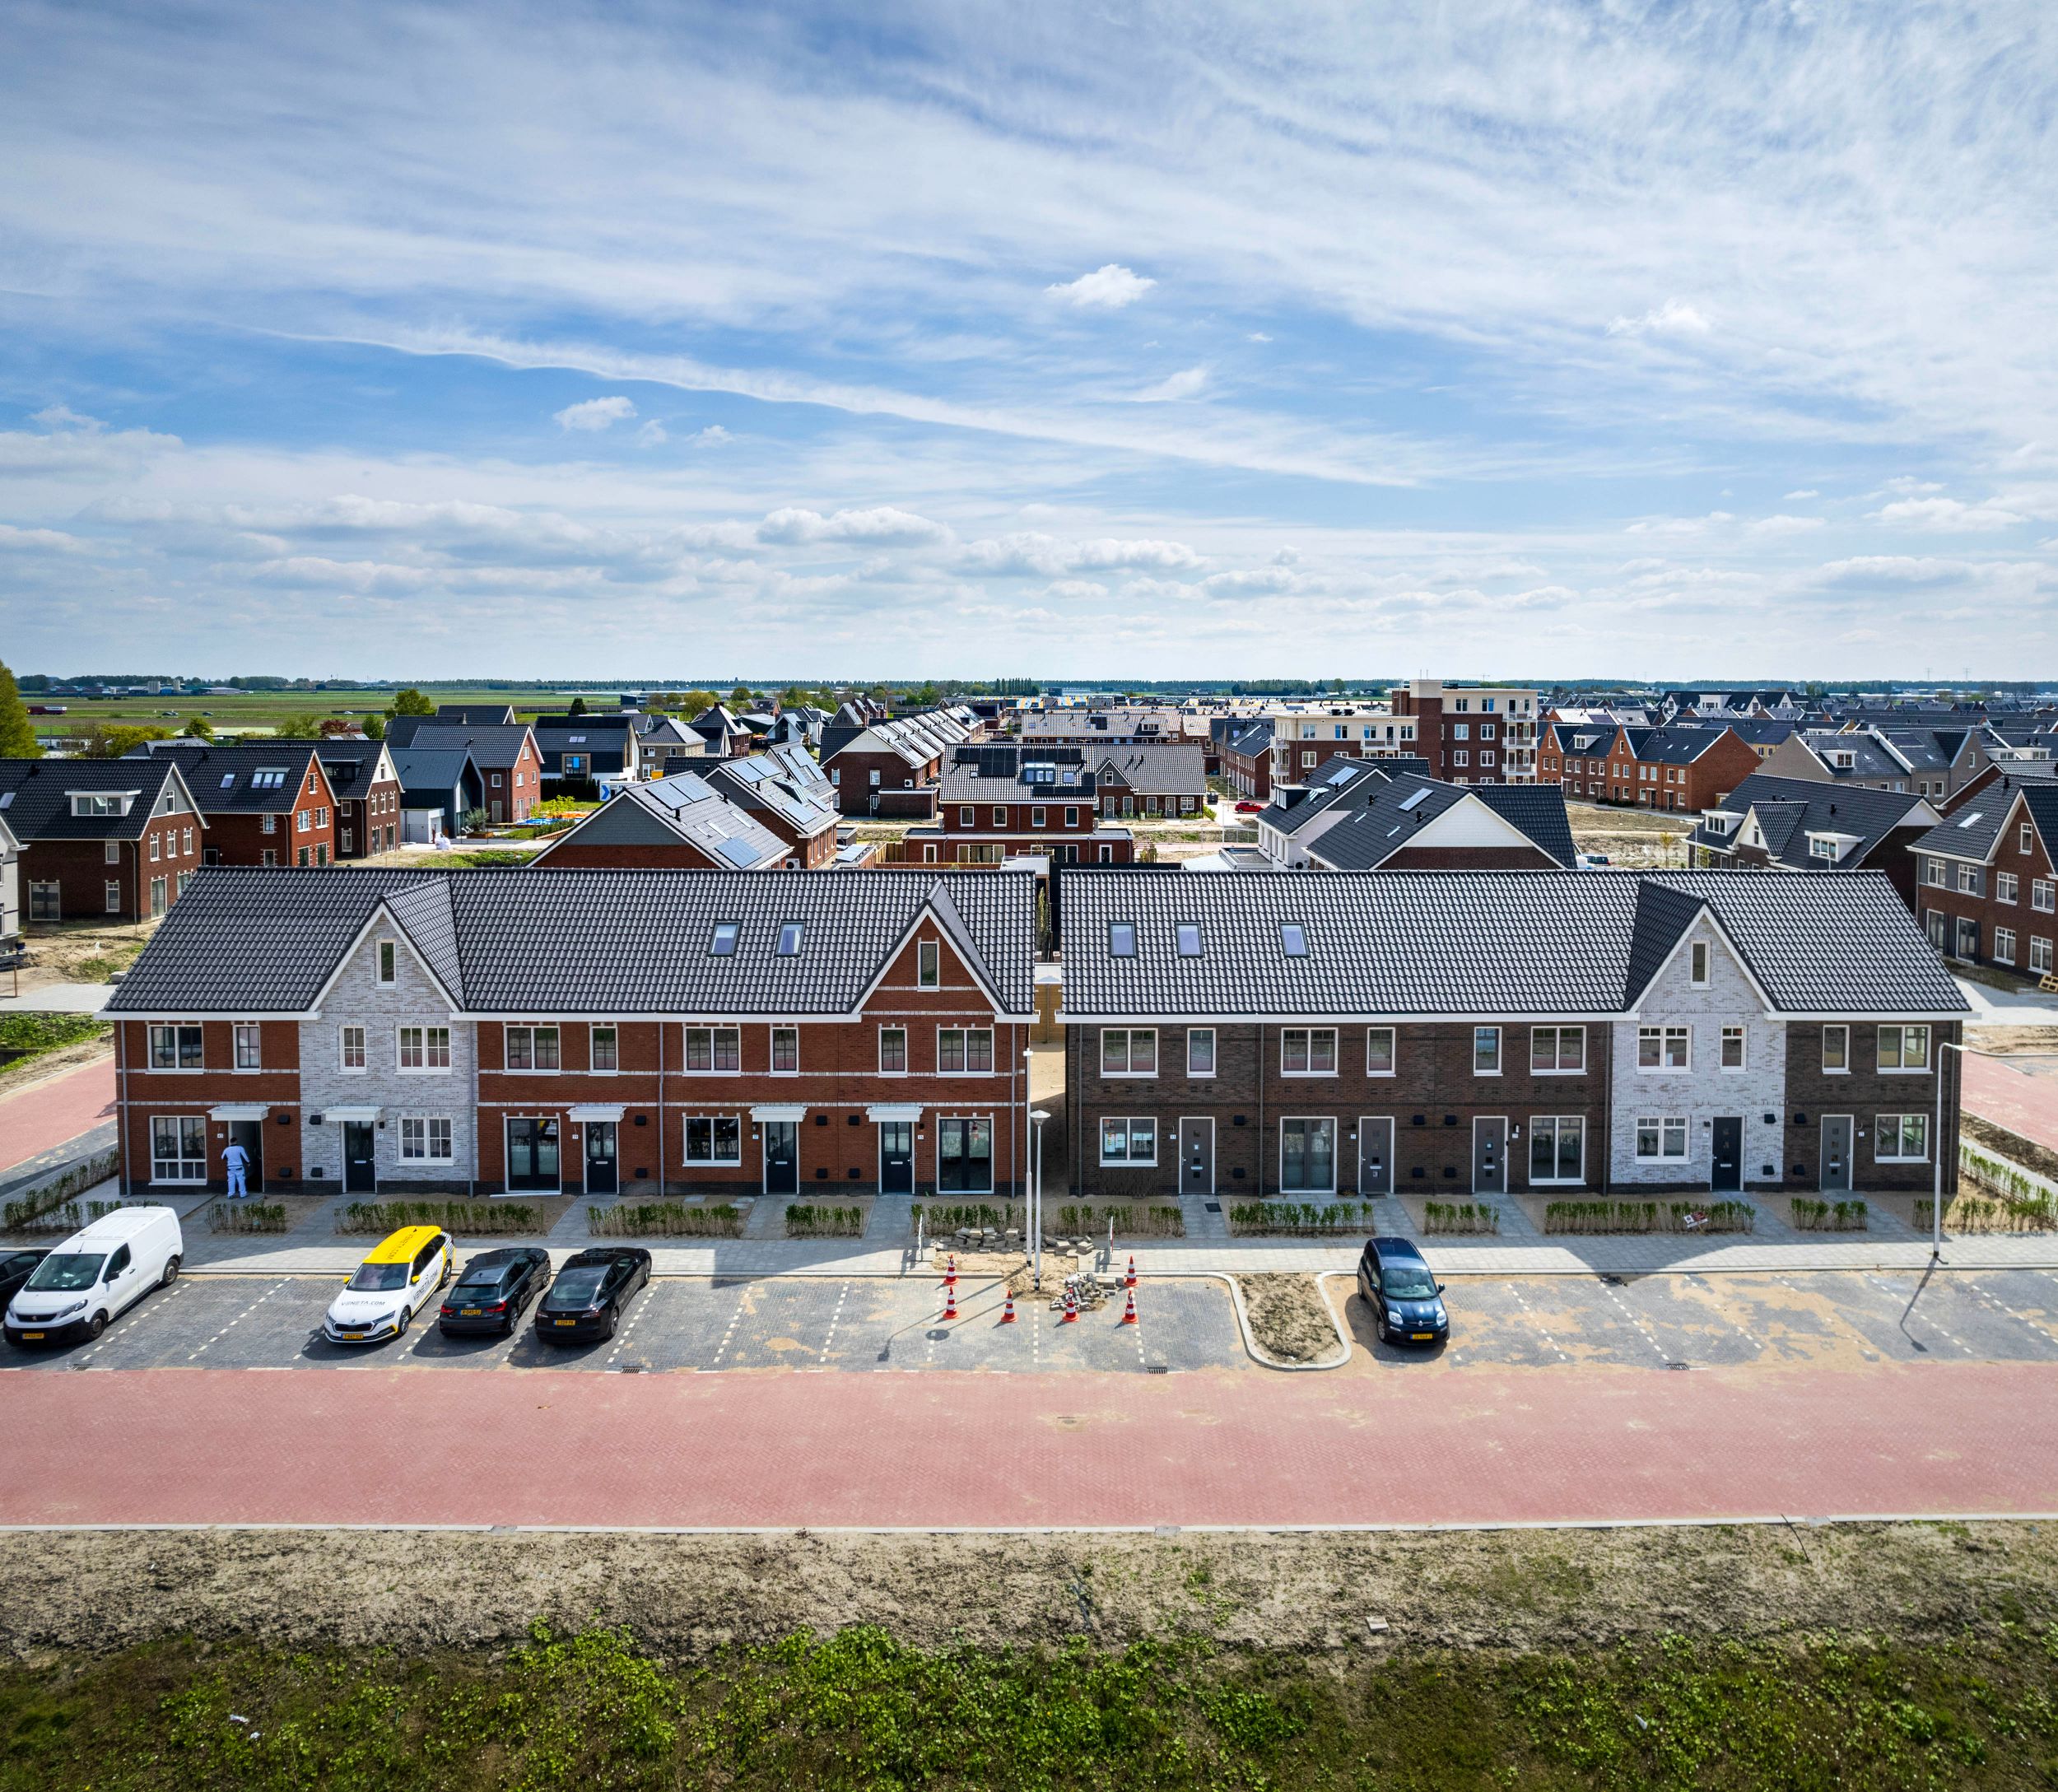 Dronefoto van een rij tweelaags met kap woningen die wij gerealiseerd hebben in Zevenhuizen